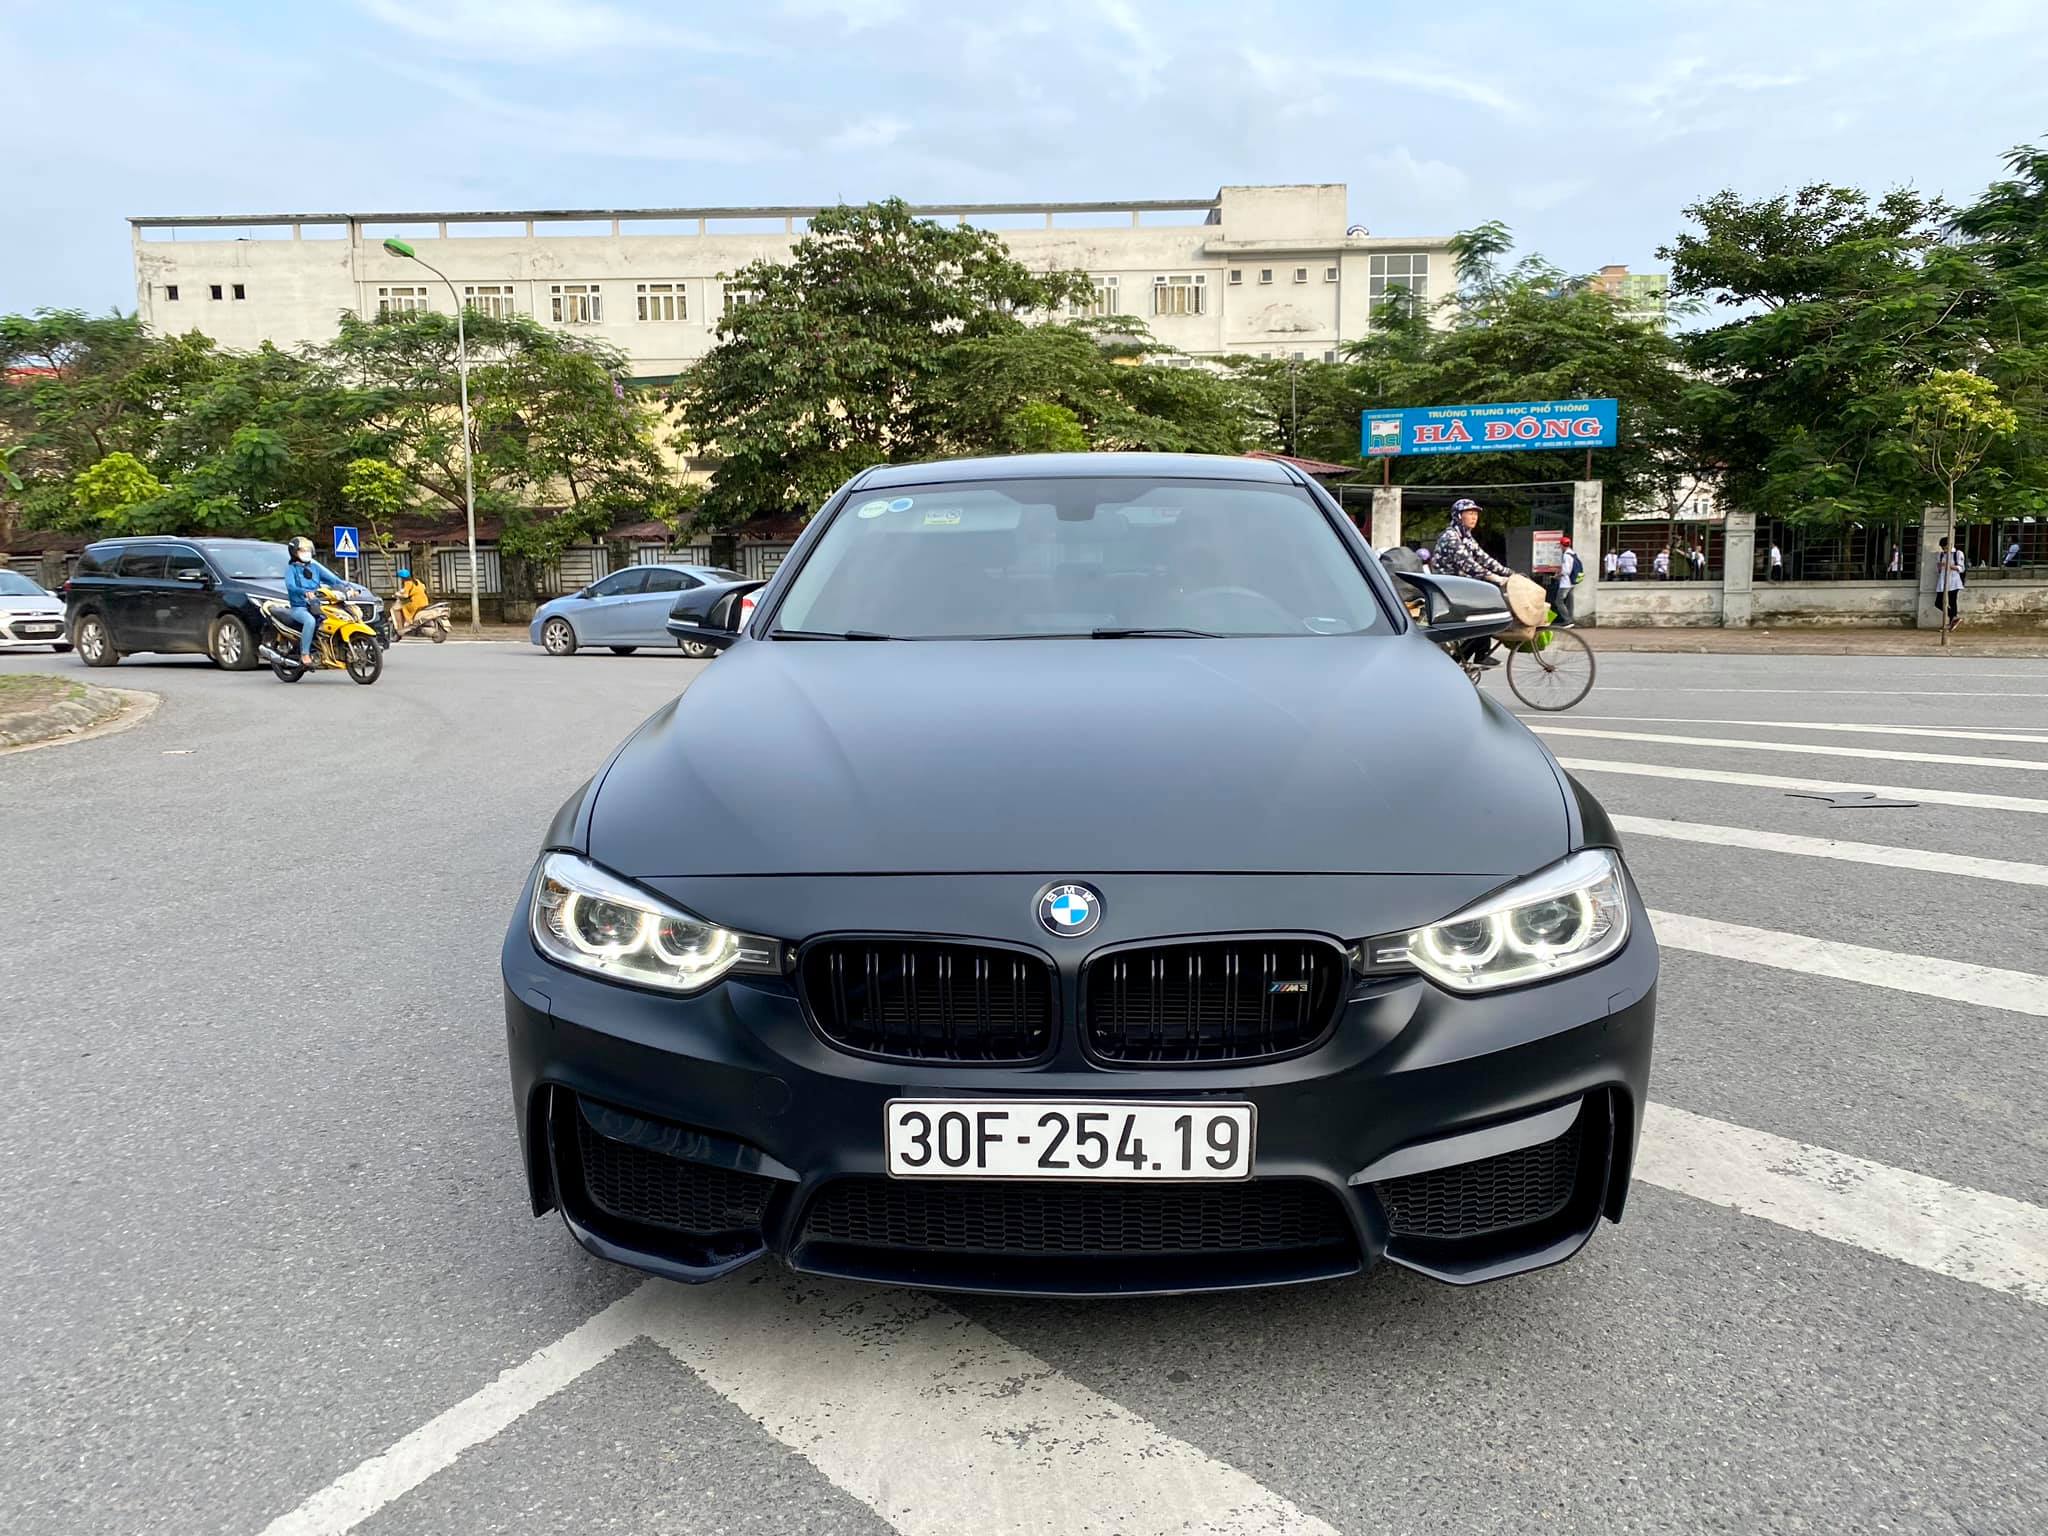 BMW 320i 2015    Giá 102 tỷ  0903677771  Xe Hơi Việt  Chợ Mua Bán Xe  Ô Tô Xe Máy Xe Tải Xe Khách Online